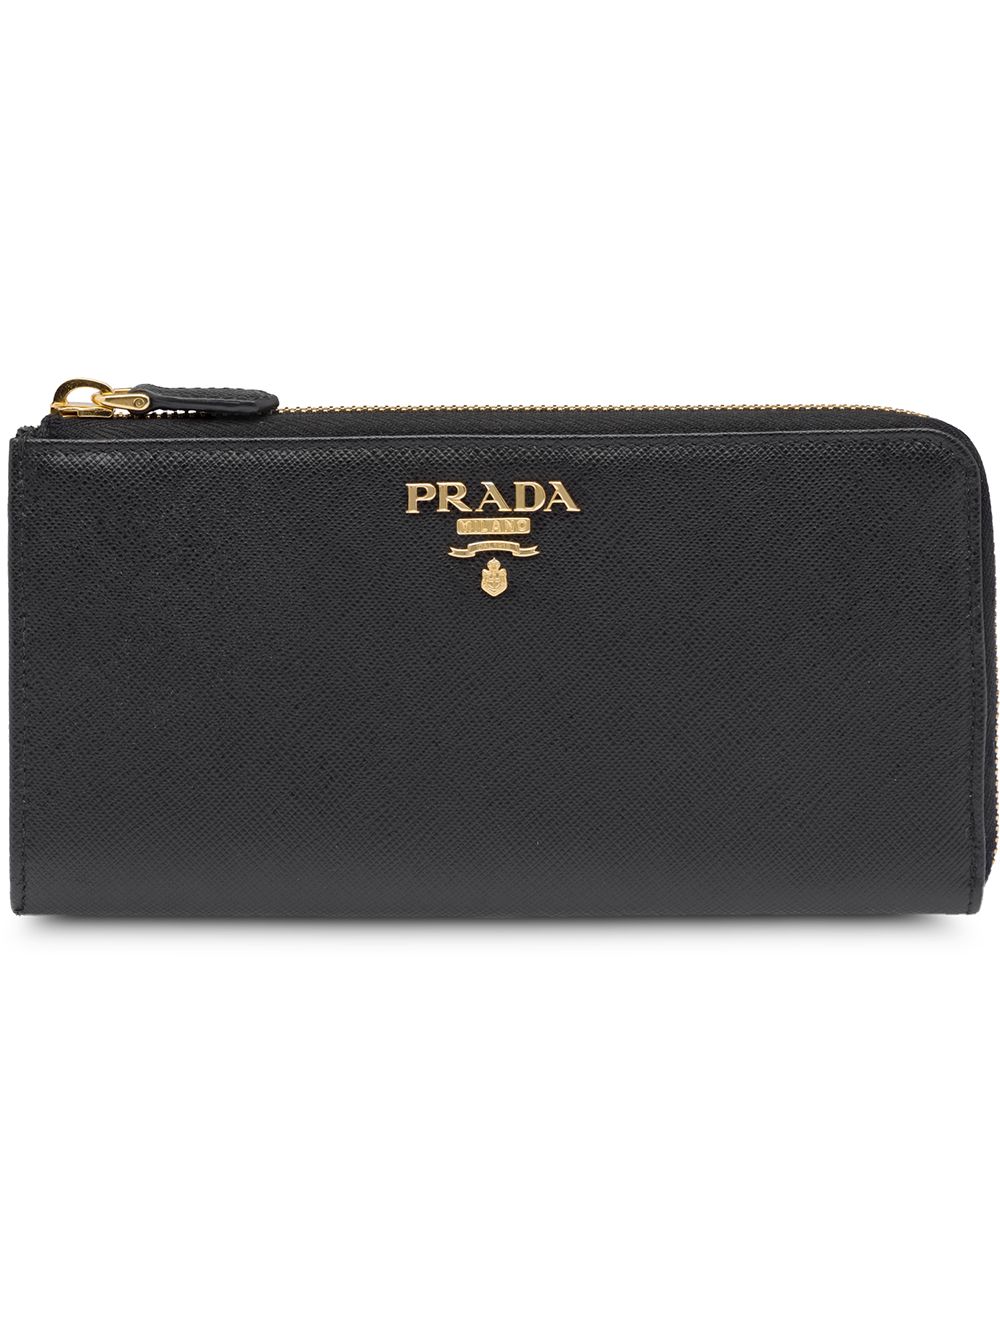 фото Prada большой кошелек с логотипом